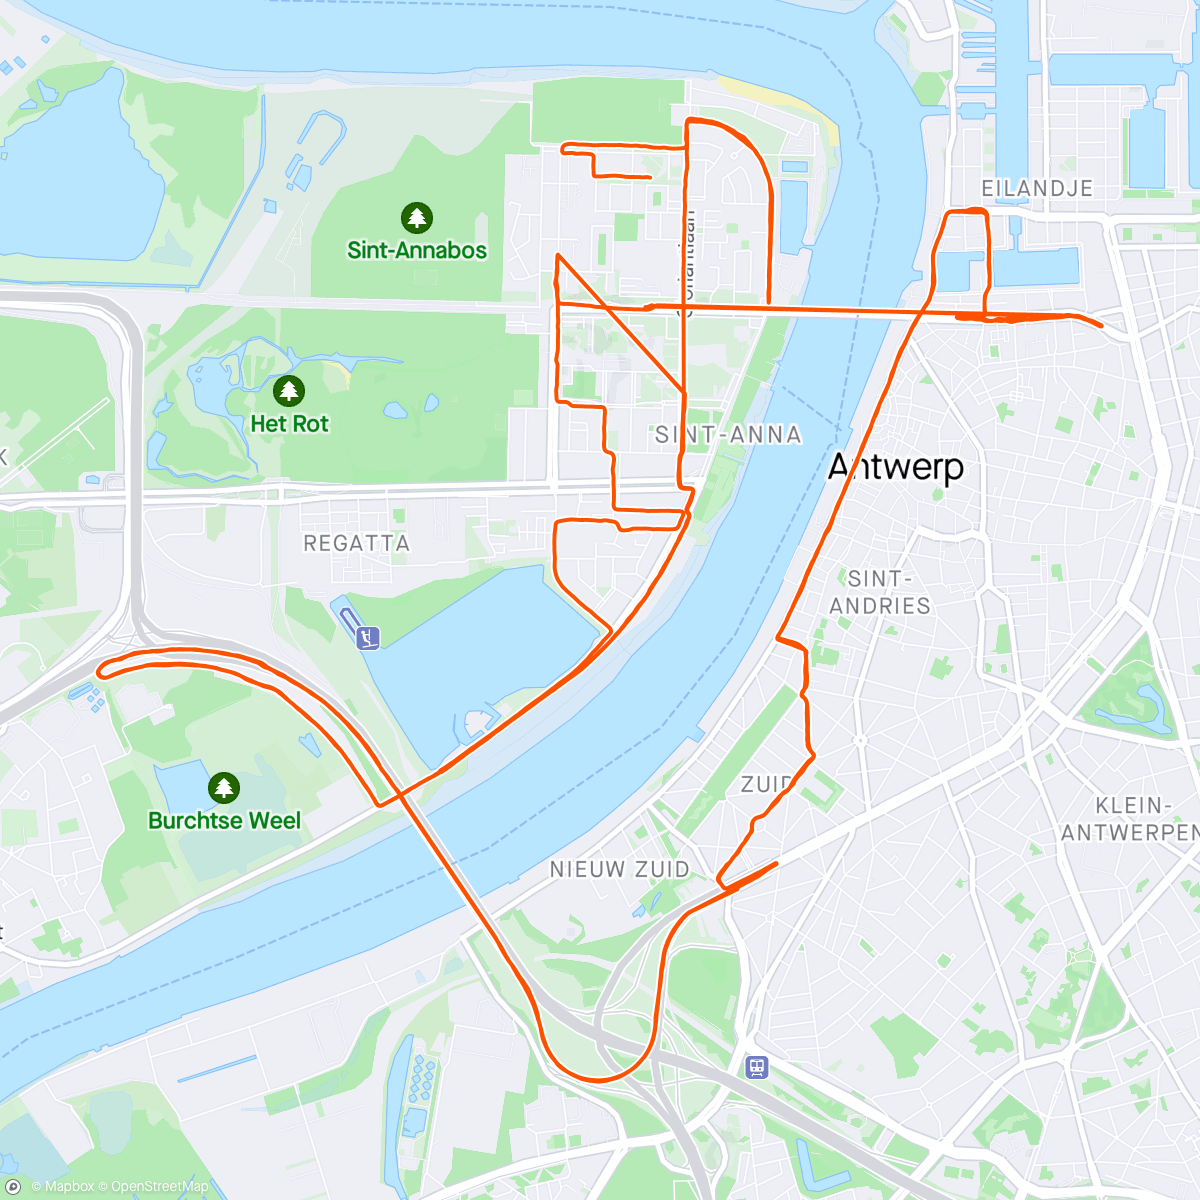 Map of the activity, Antwerp ten miles ⚡